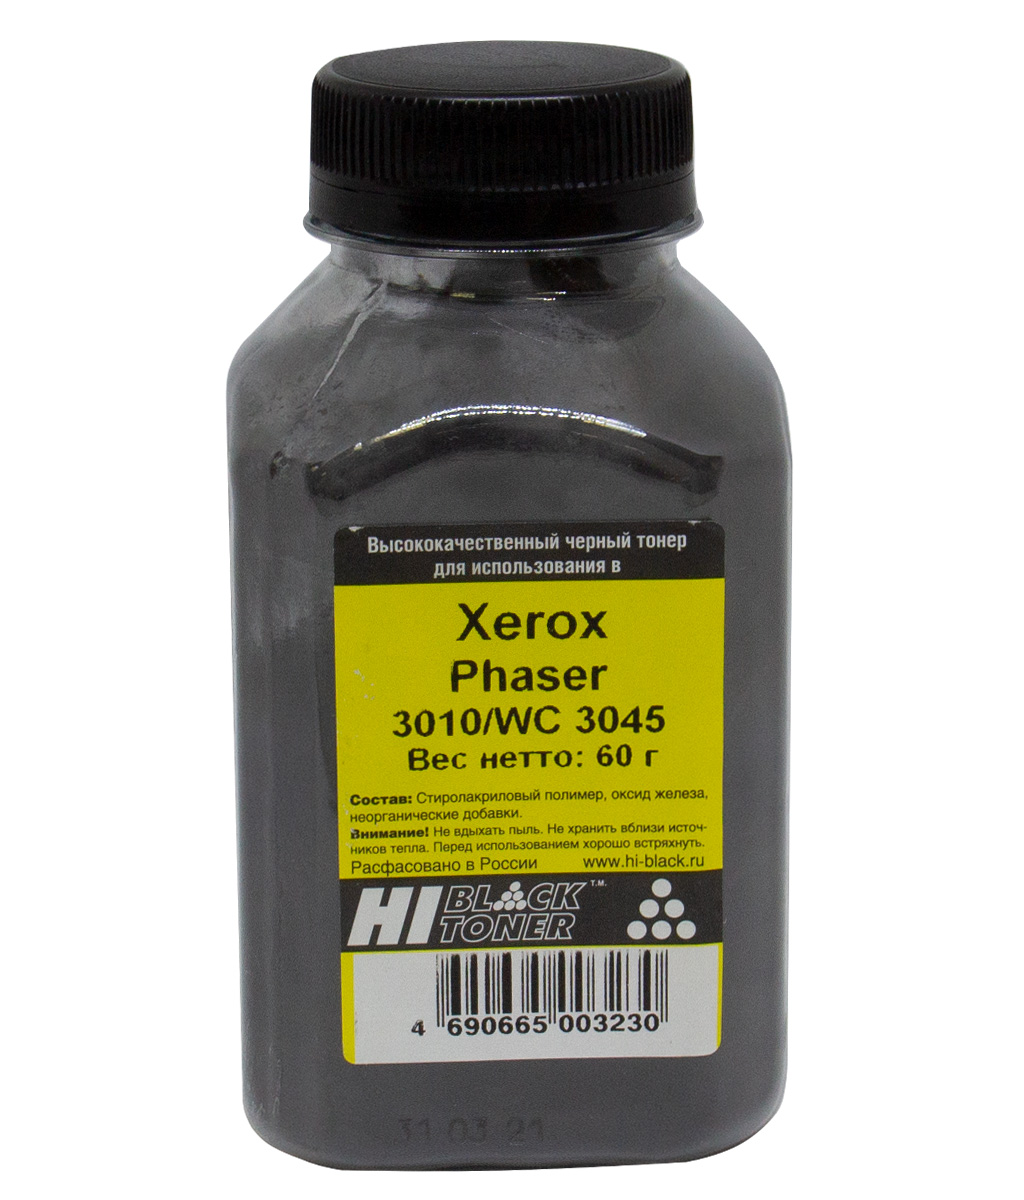 Тонер Hi-Black для Xerox Phaser 3010/ WorkCentre 3045, чёрный, 60 г.